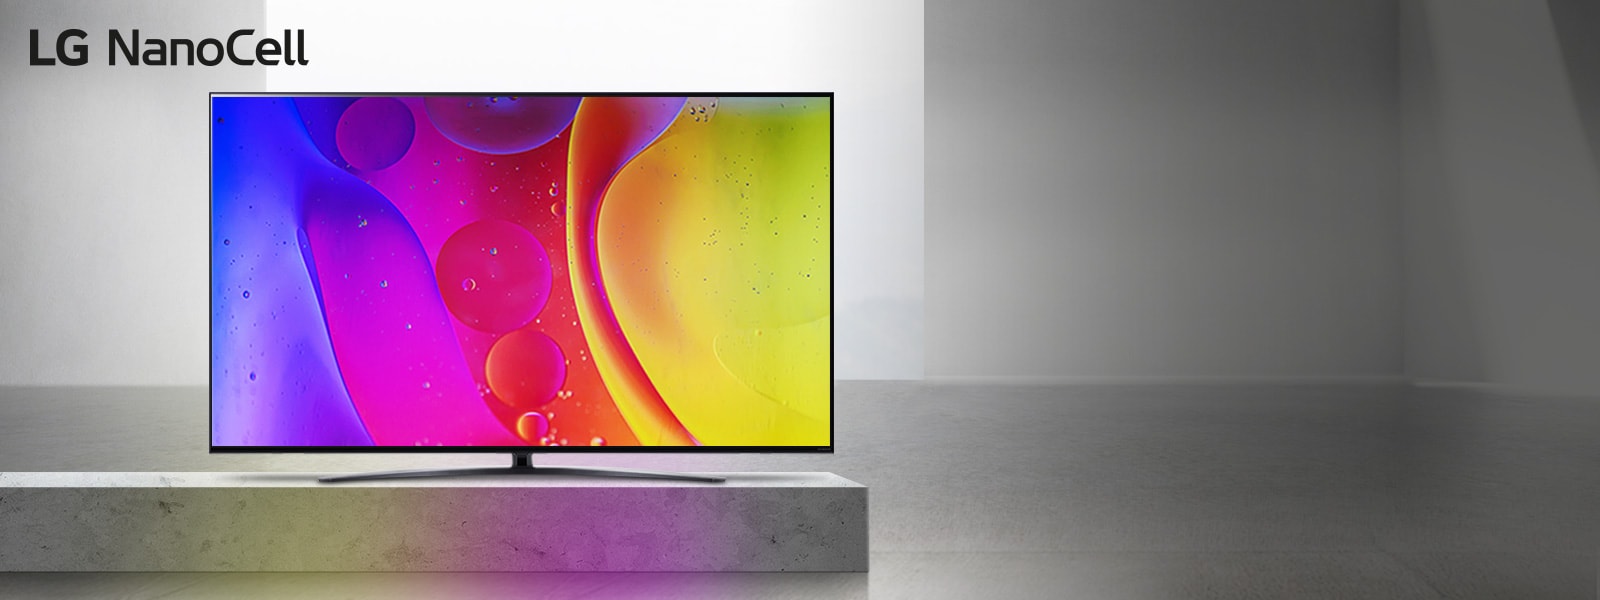 Телевизор в празна стая показва ярки, хипнотично движещи се цветове на екрана.